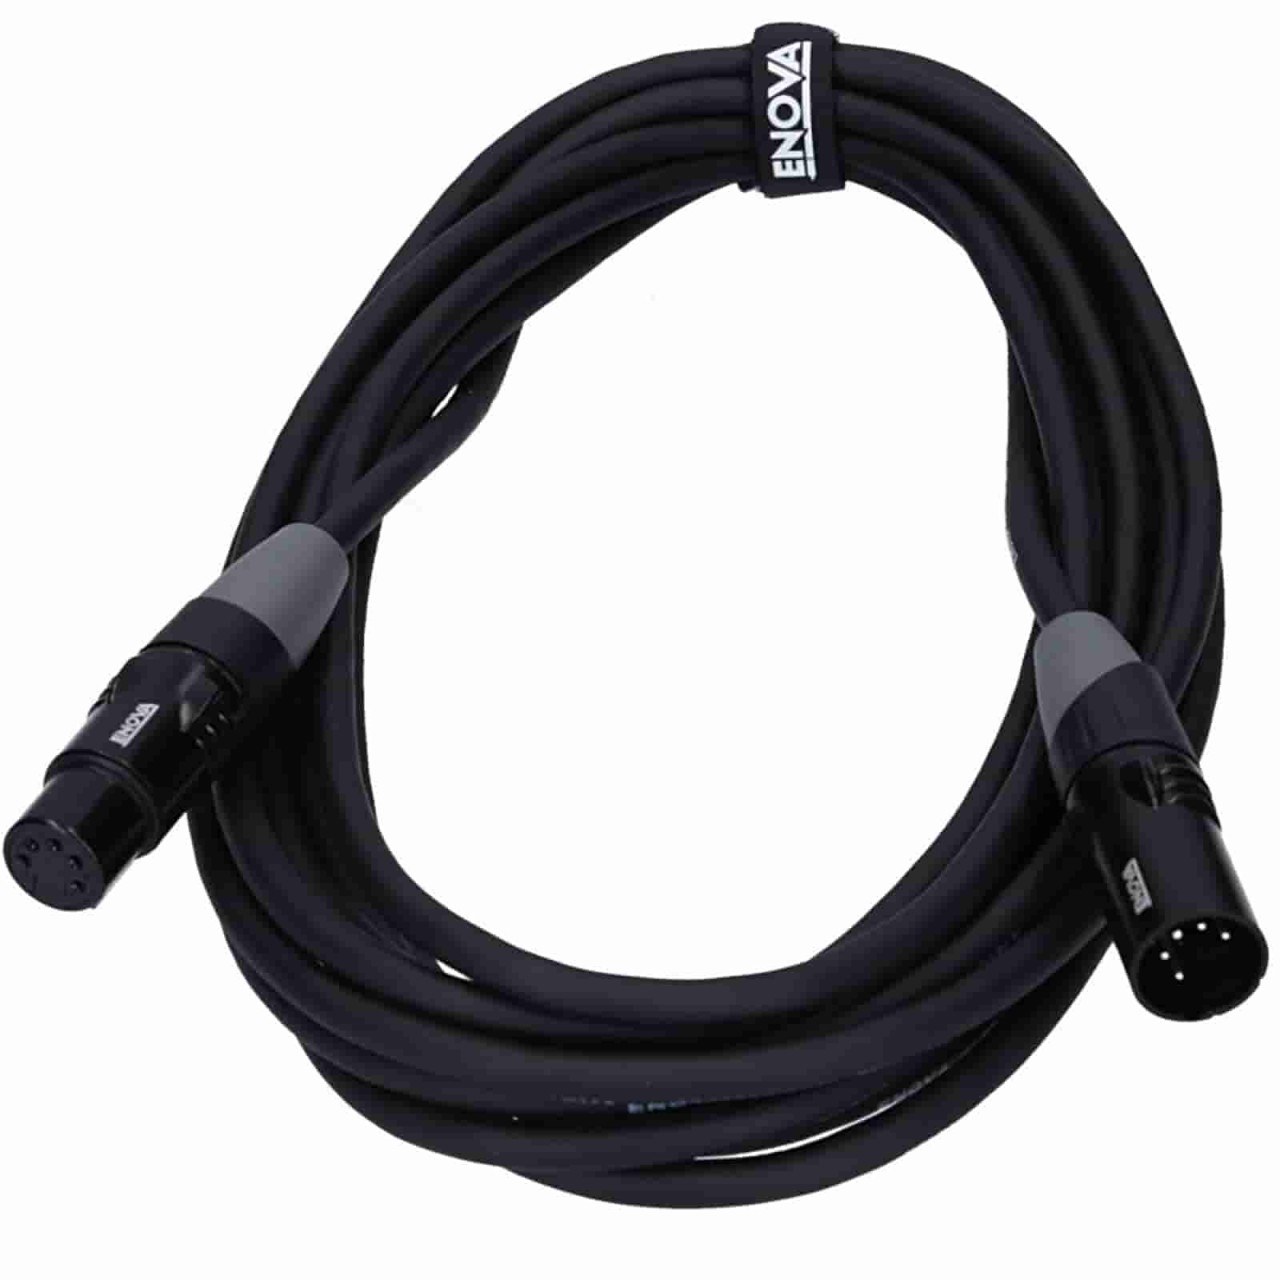 4 m DMX cable, 5-pin XLR male to 5-pin XLR female from Enova